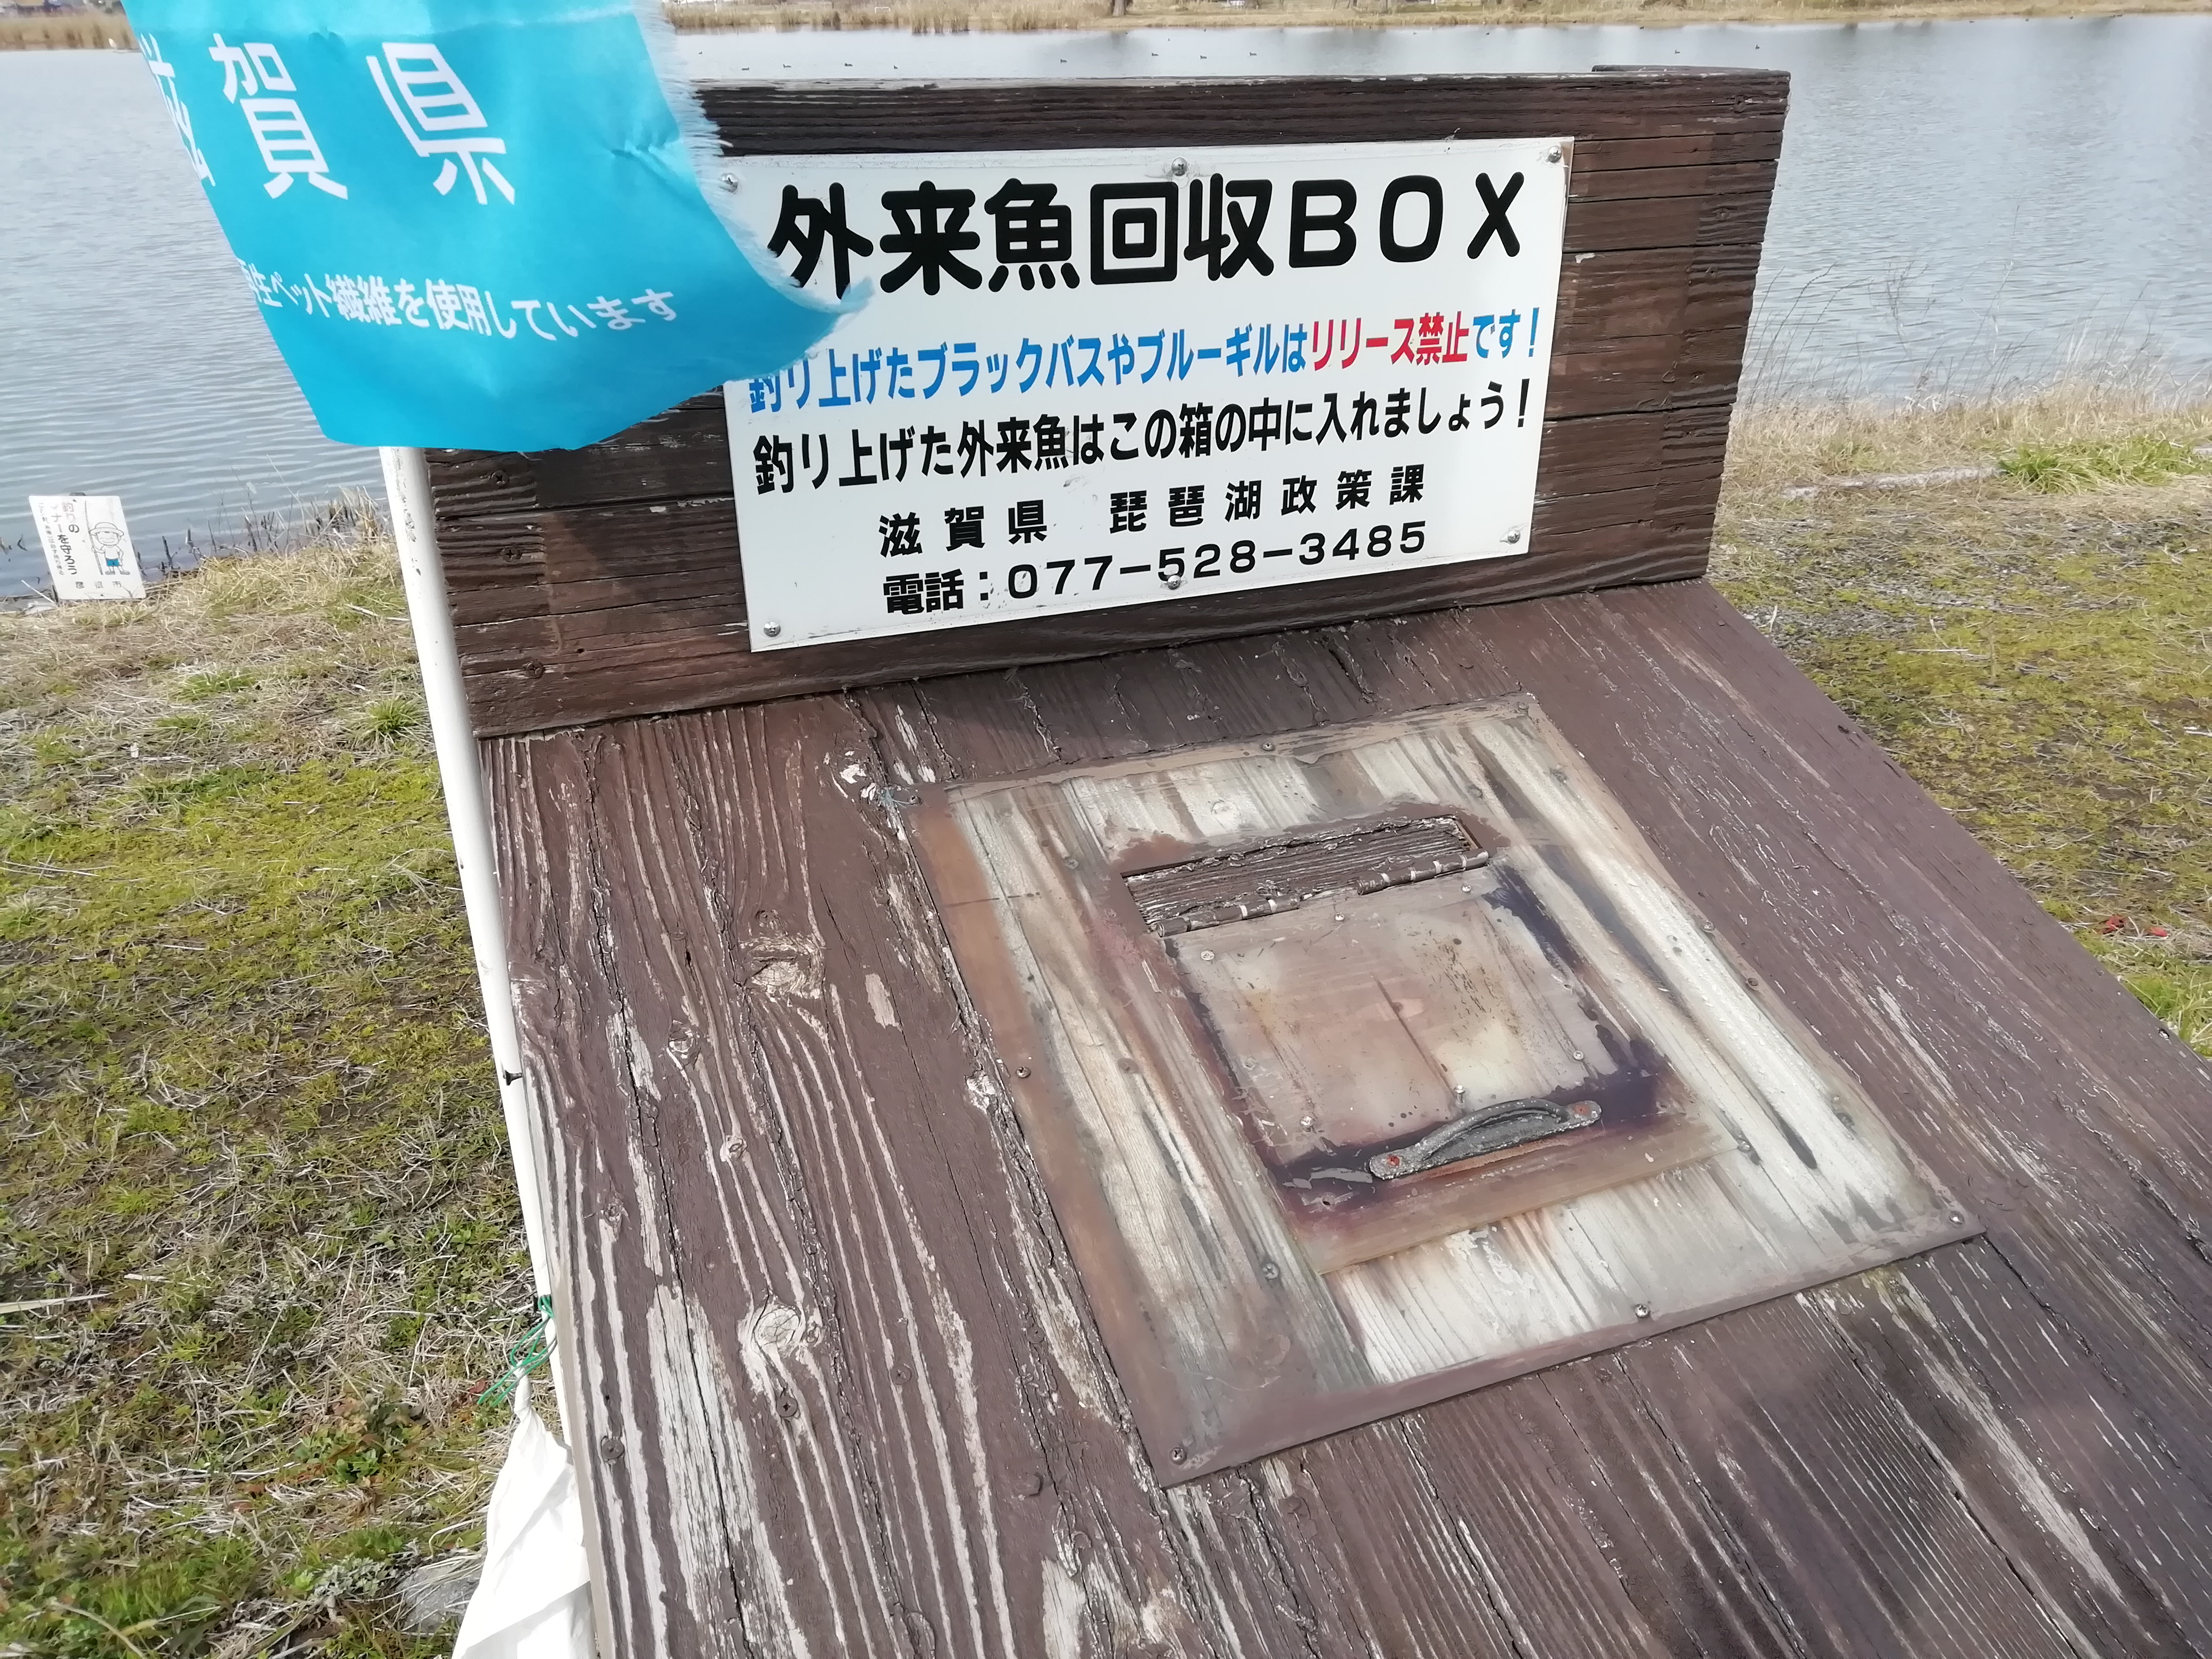 釣りを楽しみながら外来魚駆除を 滋賀県 外来魚回収ボックス いけす などの取り組み 琵琶故知新